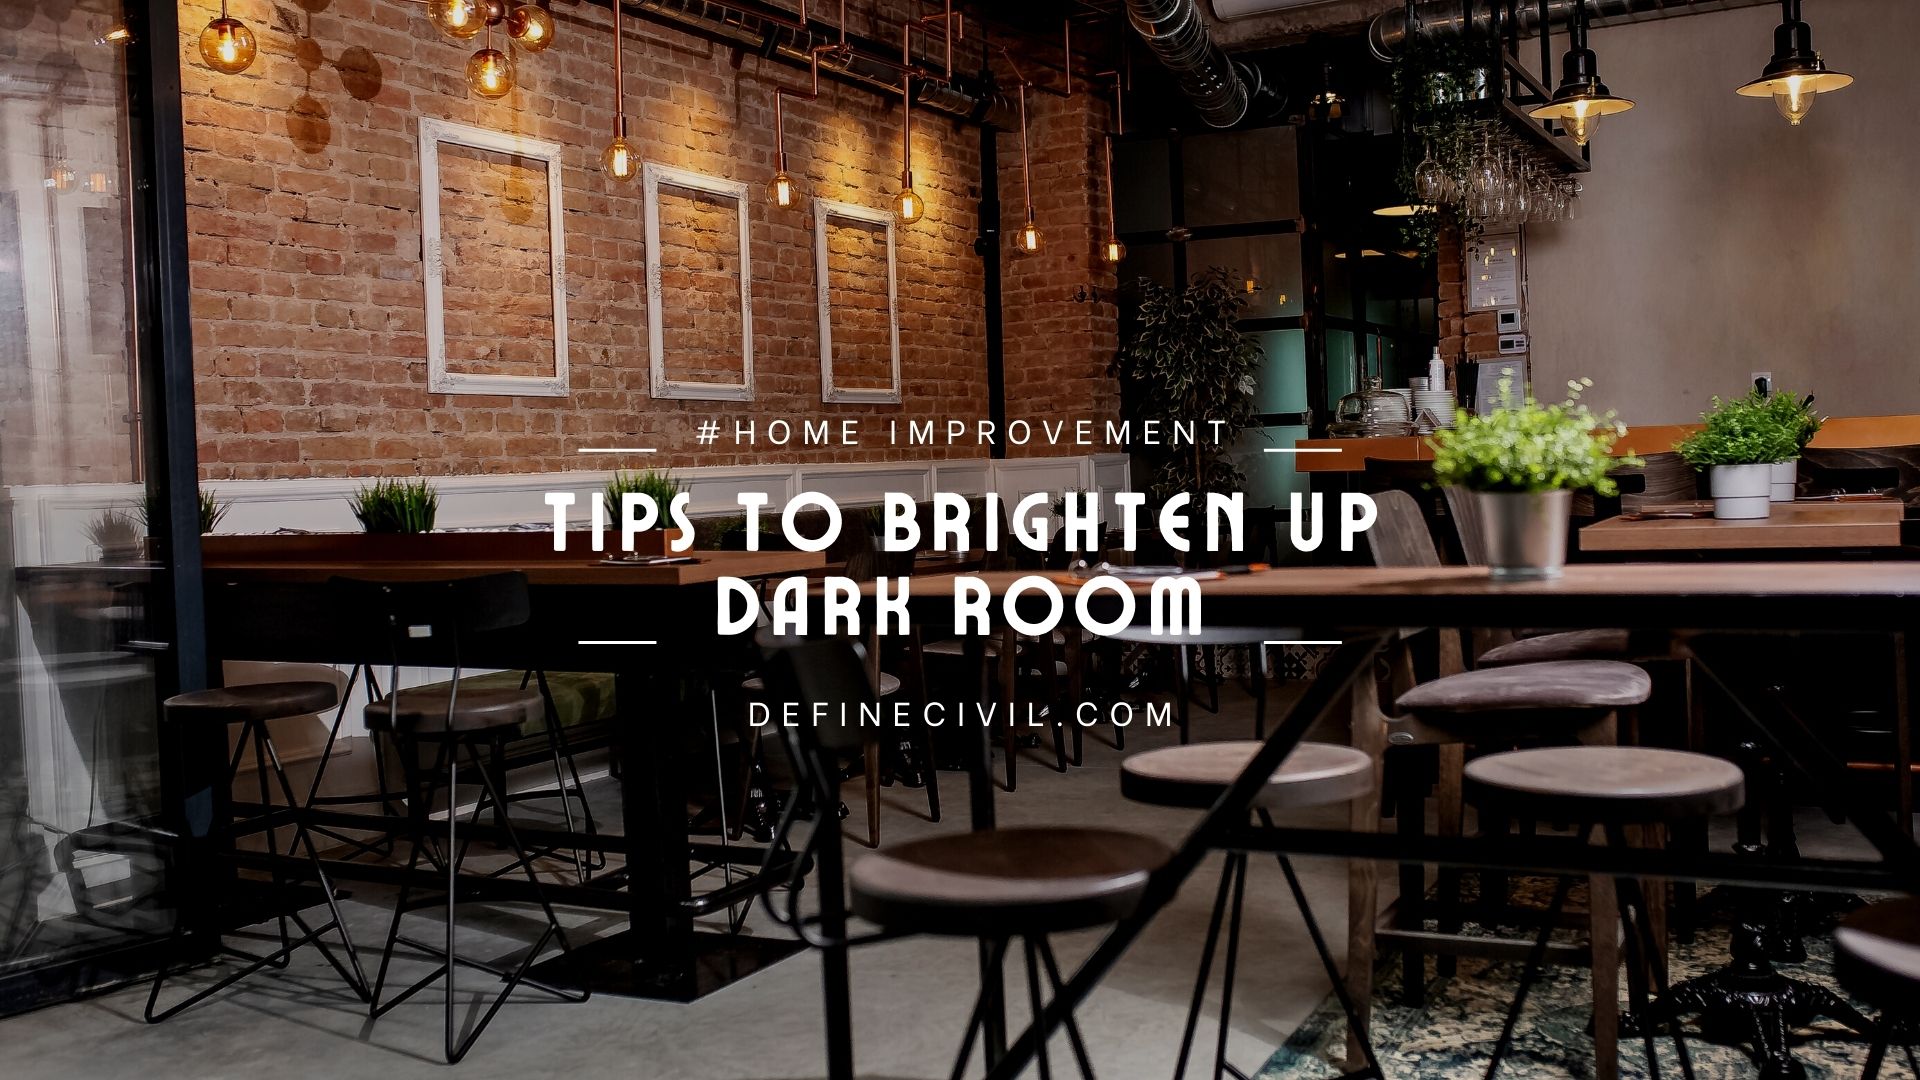 Tips to brighten up dark room